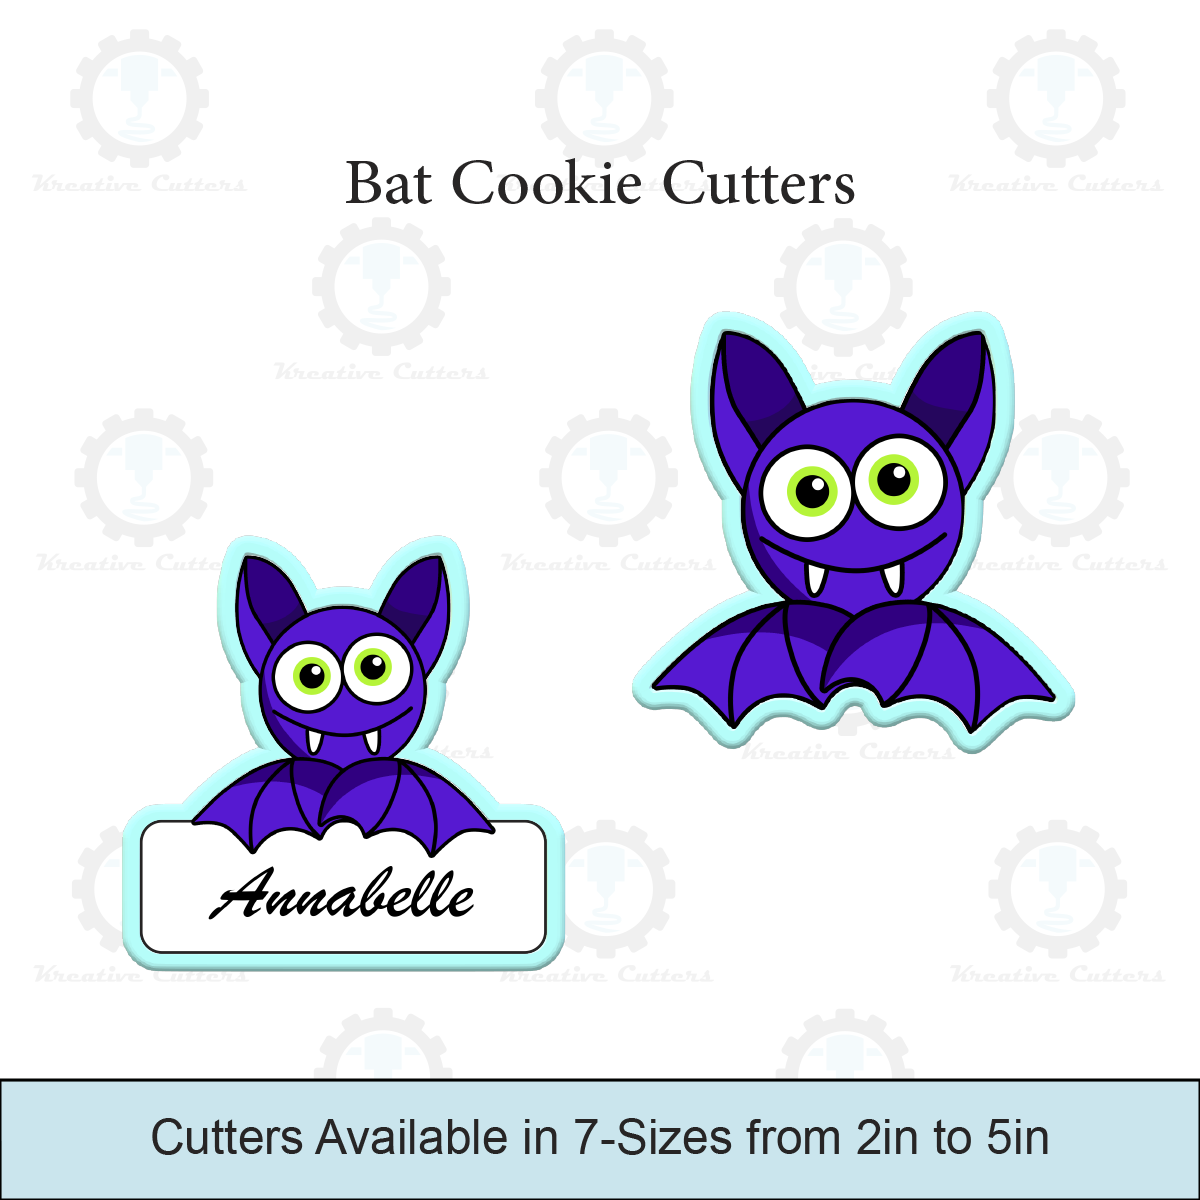 Bat Cookie Cutters